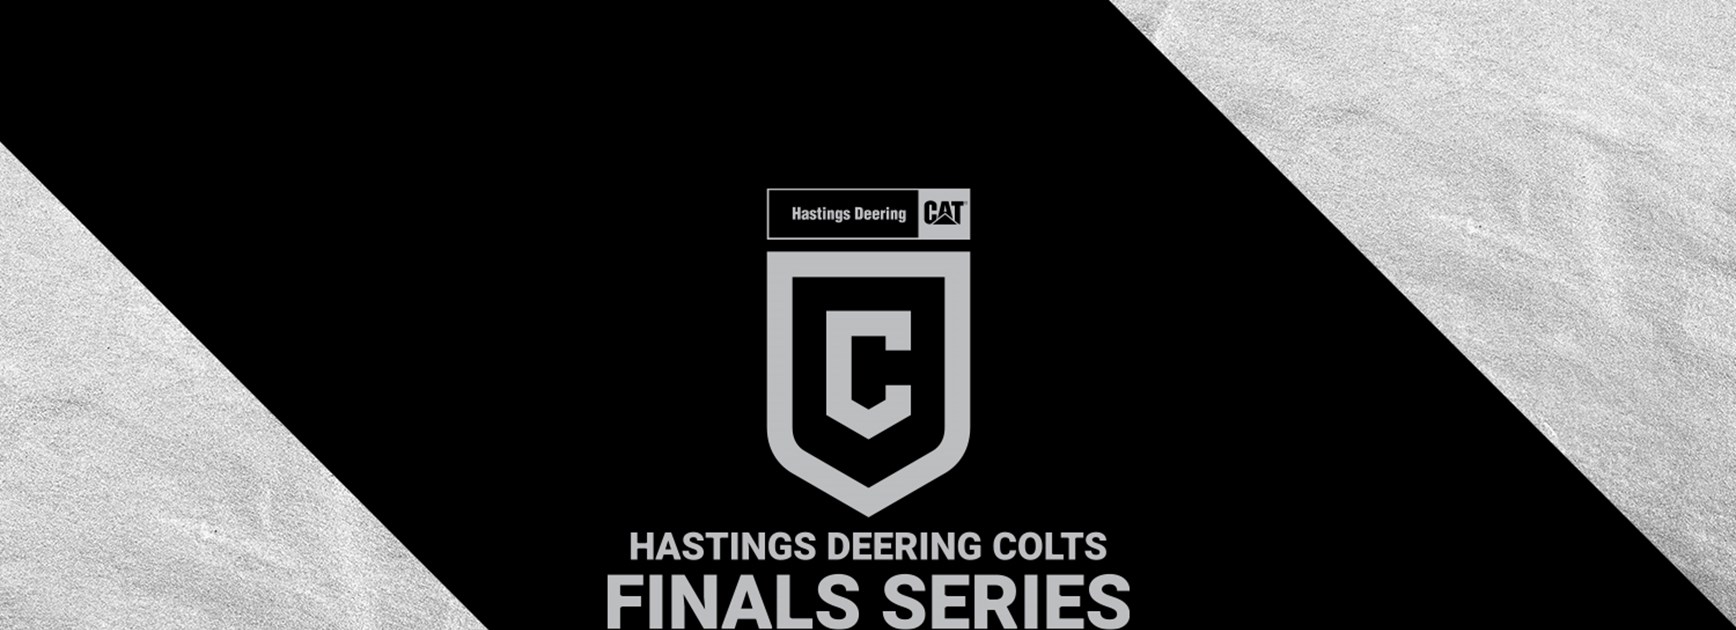 Hastings Deering Colts Finals Week 1 team lists